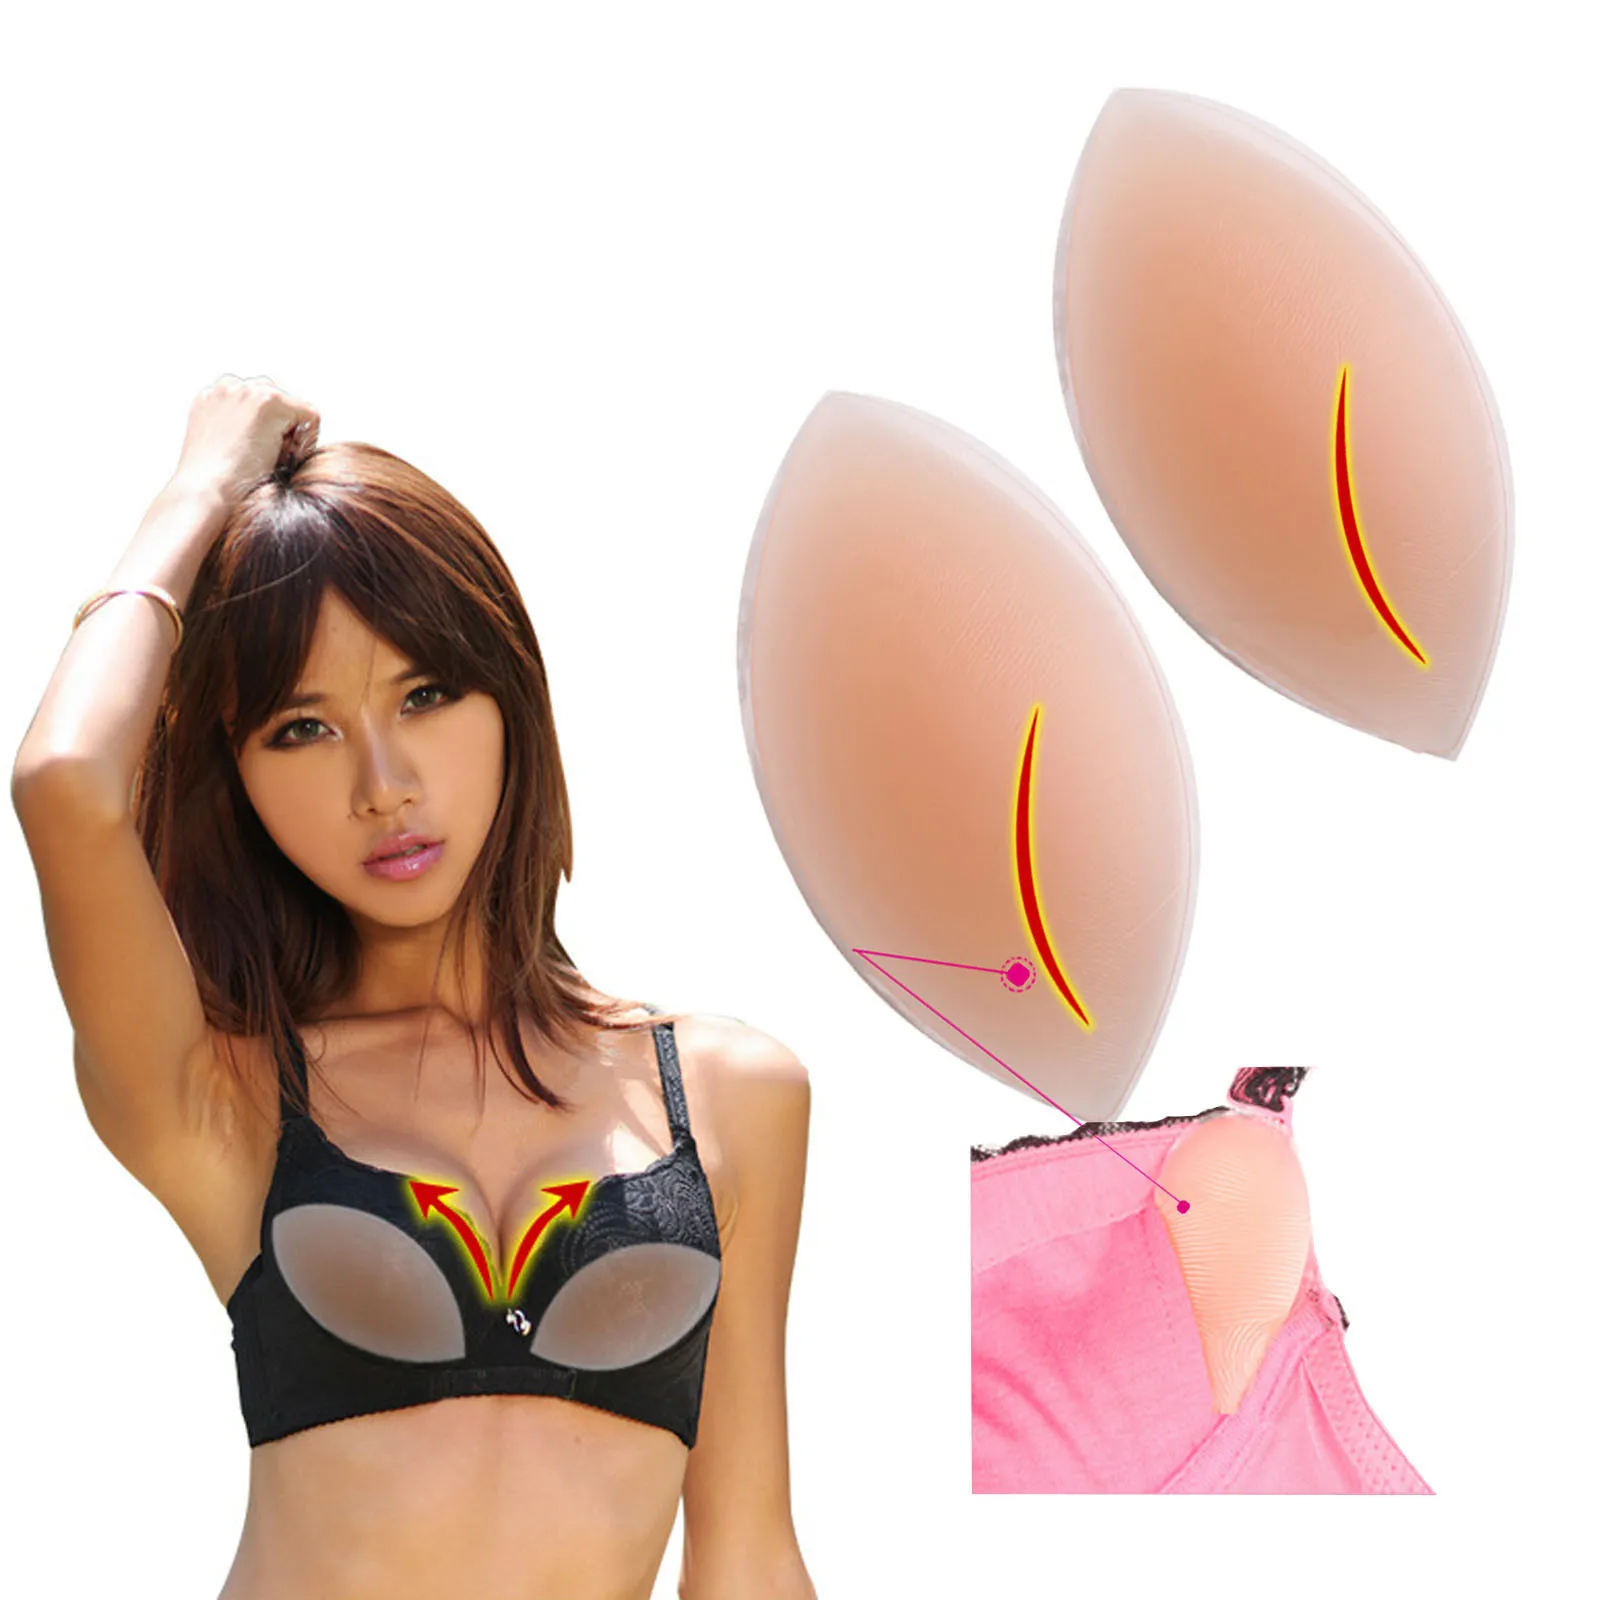 

Сексуальный женский силиконовый бюстгальтер, гелевые невидимые вставки, накладки для груди для платья, бикини, купальник, бюстгальтер пуш-ап, вкладыши для увеличения груди # g3